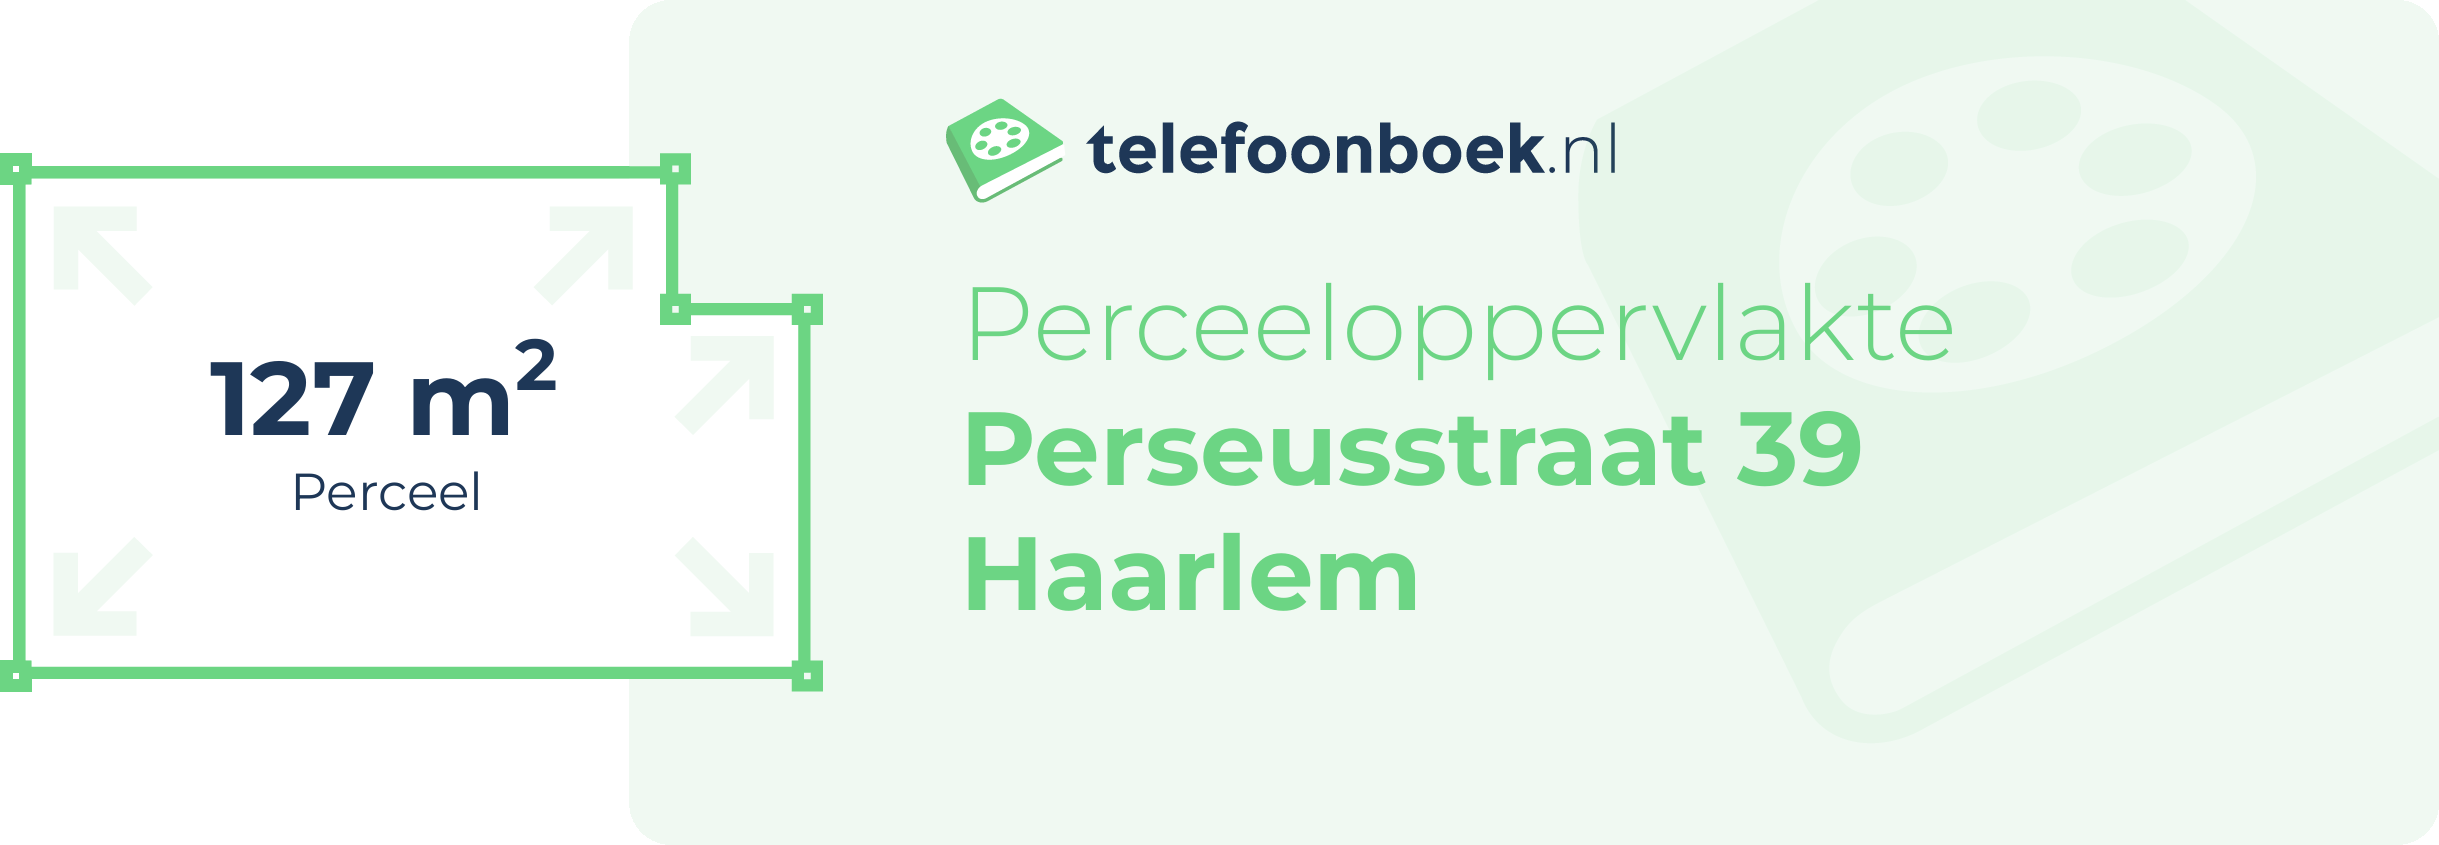 Perceeloppervlakte Perseusstraat 39 Haarlem